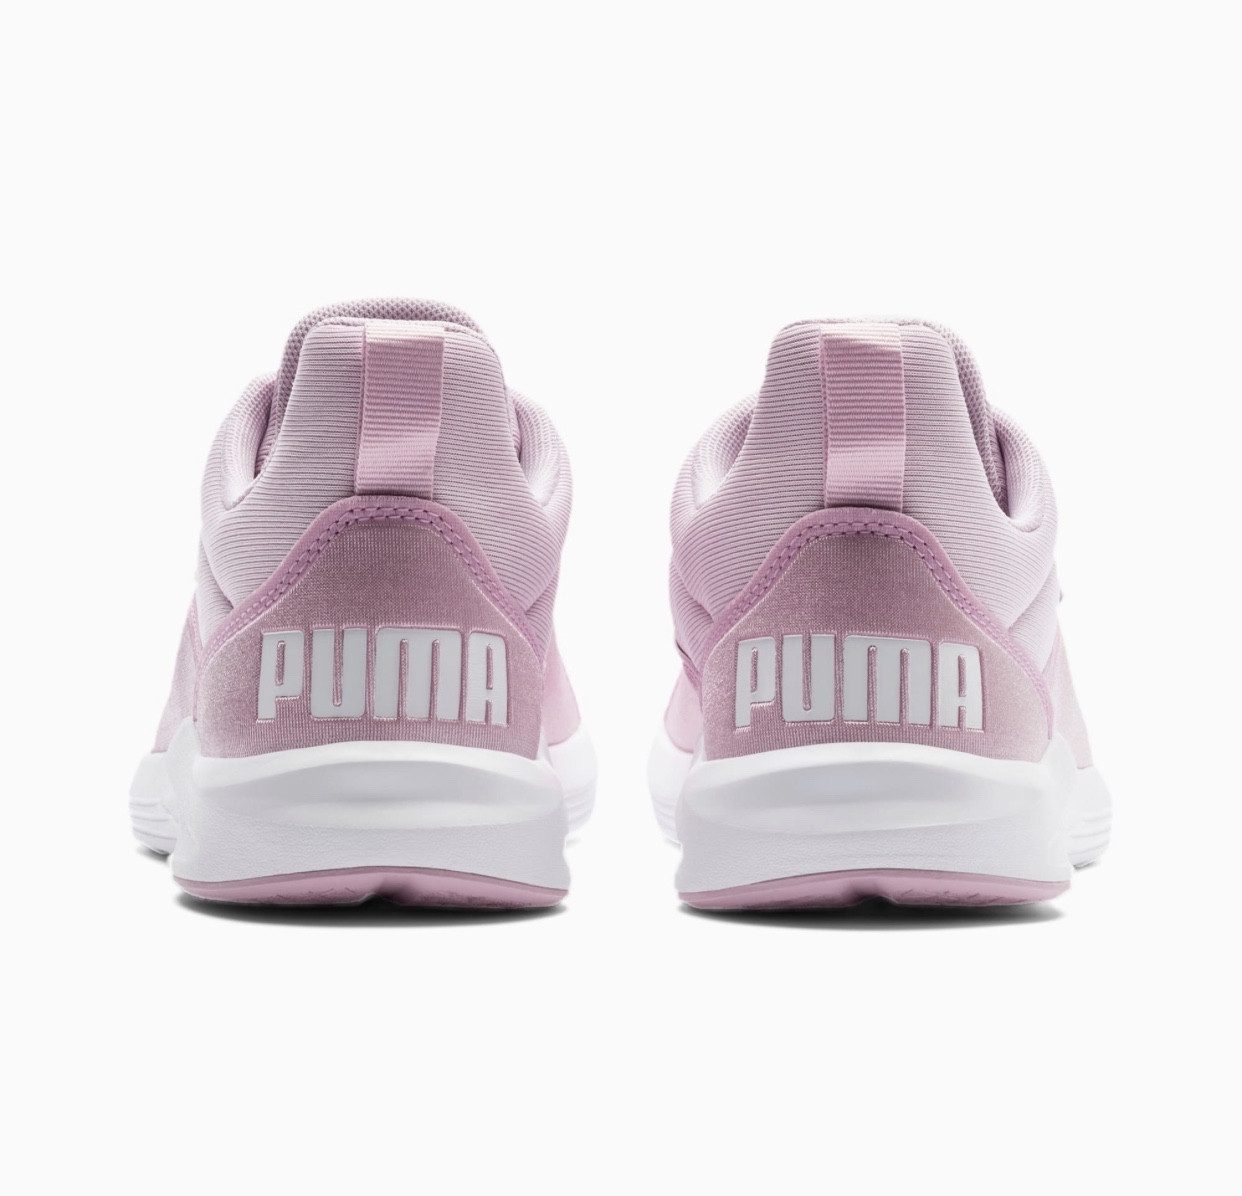 puma prodigy training shoes